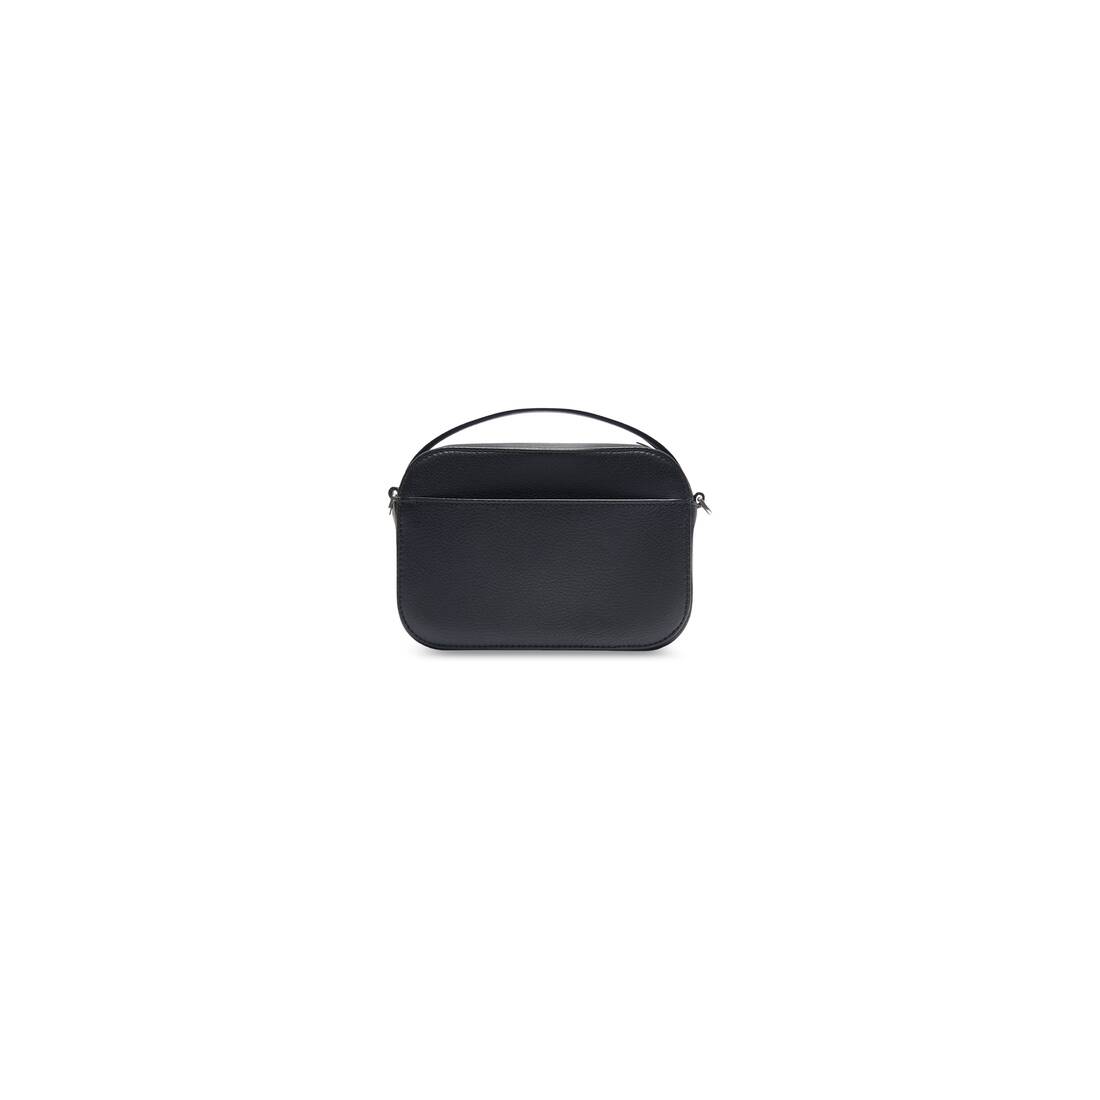 Balenciaga Grained Calfskin Xs Ville Camera Bag Black